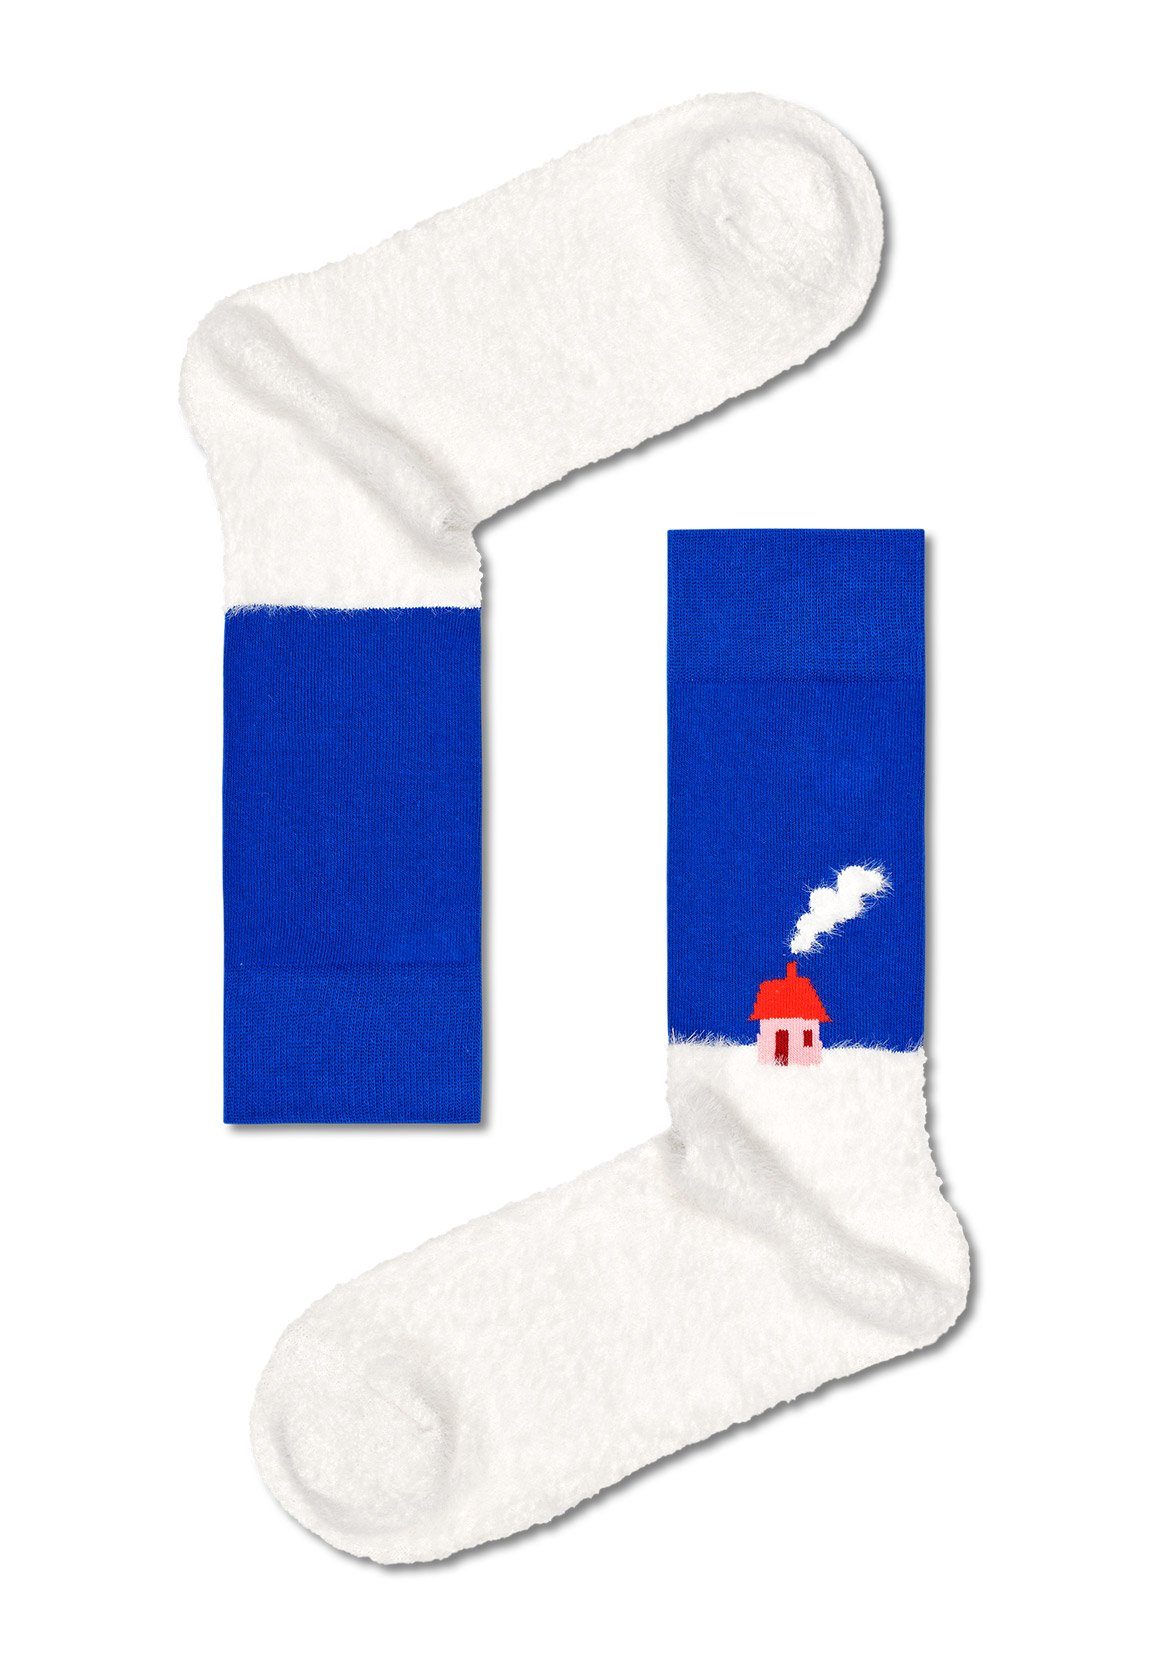 XHTG096300 SET Socks Happy TIME HOLIDAY Mehrfarbig Freizeitsocken Happy Socks GIFT 4PACK